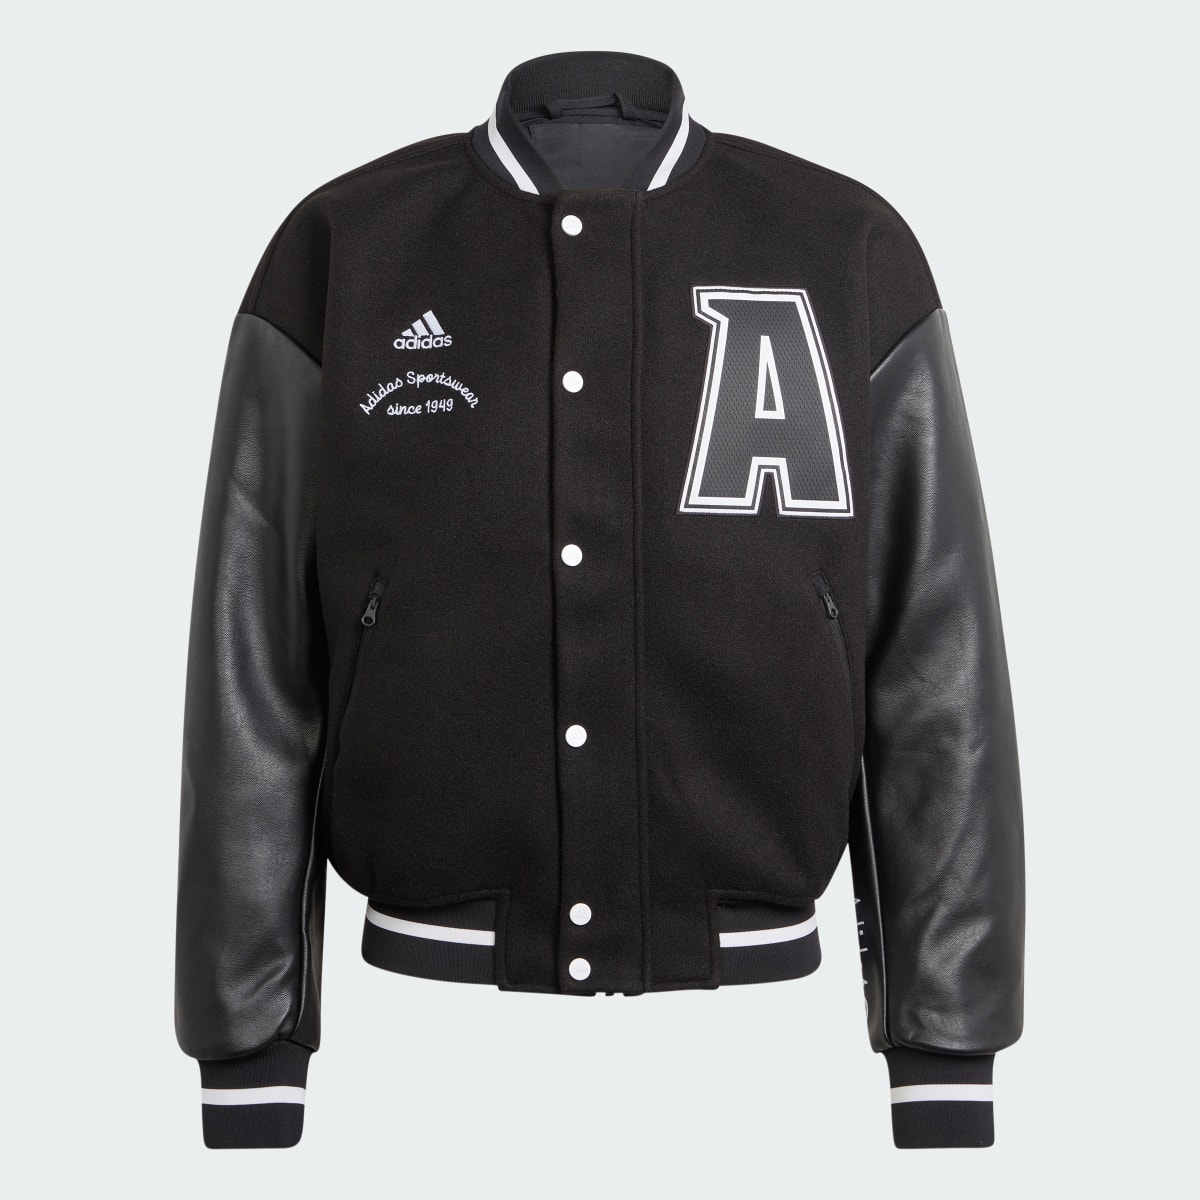 Adidas Collegiate Premium Jacket. 4